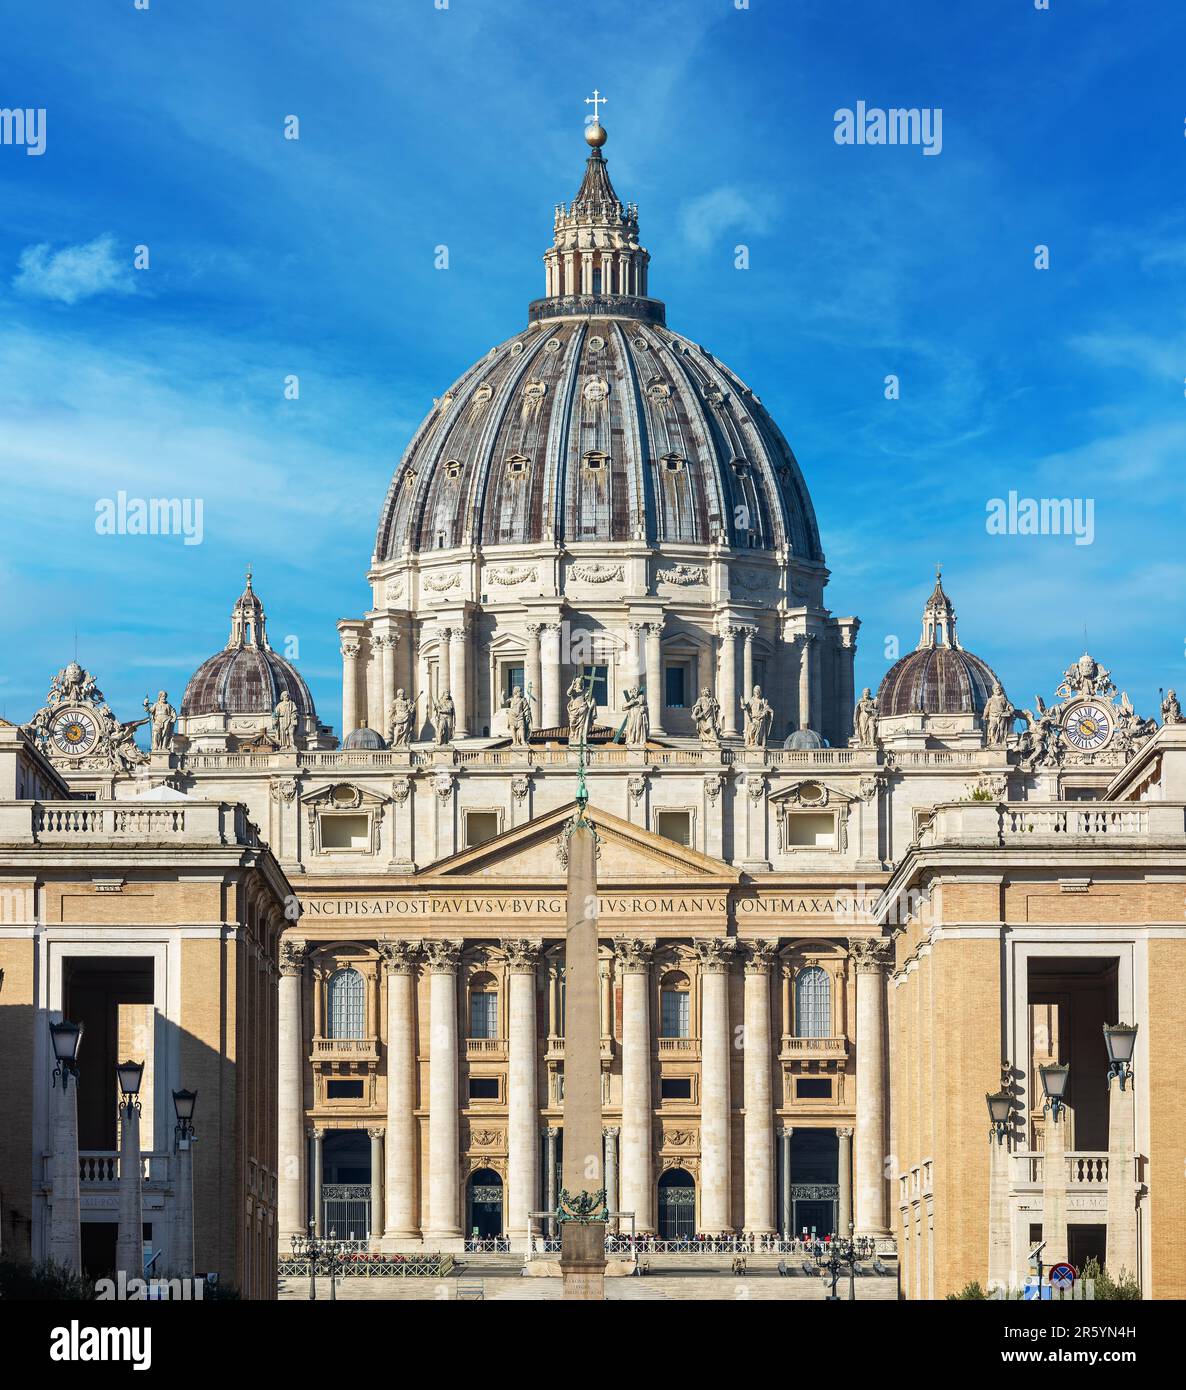 Facciata della famosa Basilica Papale (detta anche Basilica di San Pietro) sotto il cielo blu della Città del Vaticano, in Vaticano. Foto Stock